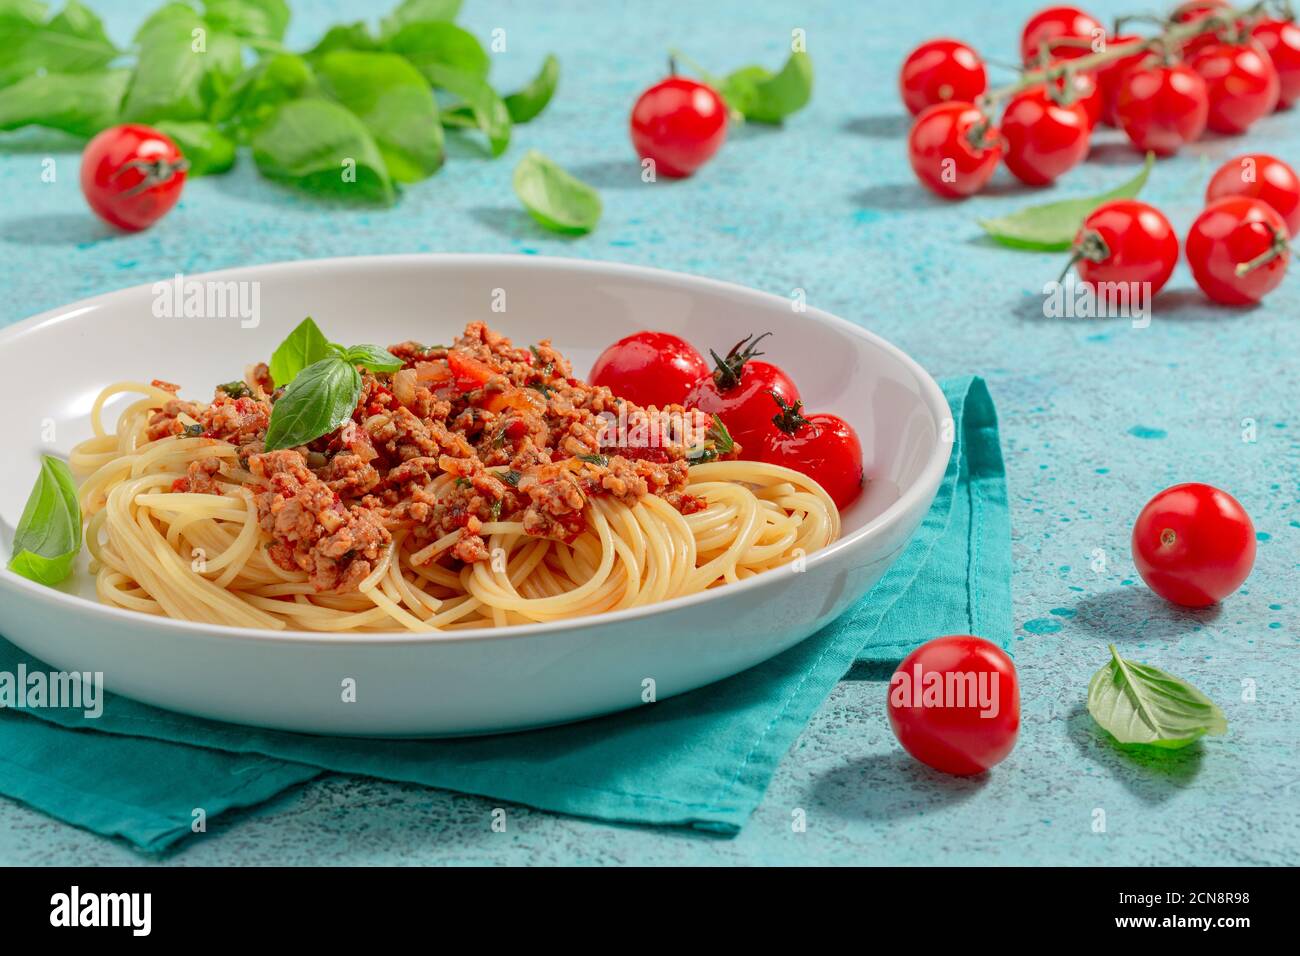 Pasta con salsa di pomodoro. Cucina italiana. Foto Stock